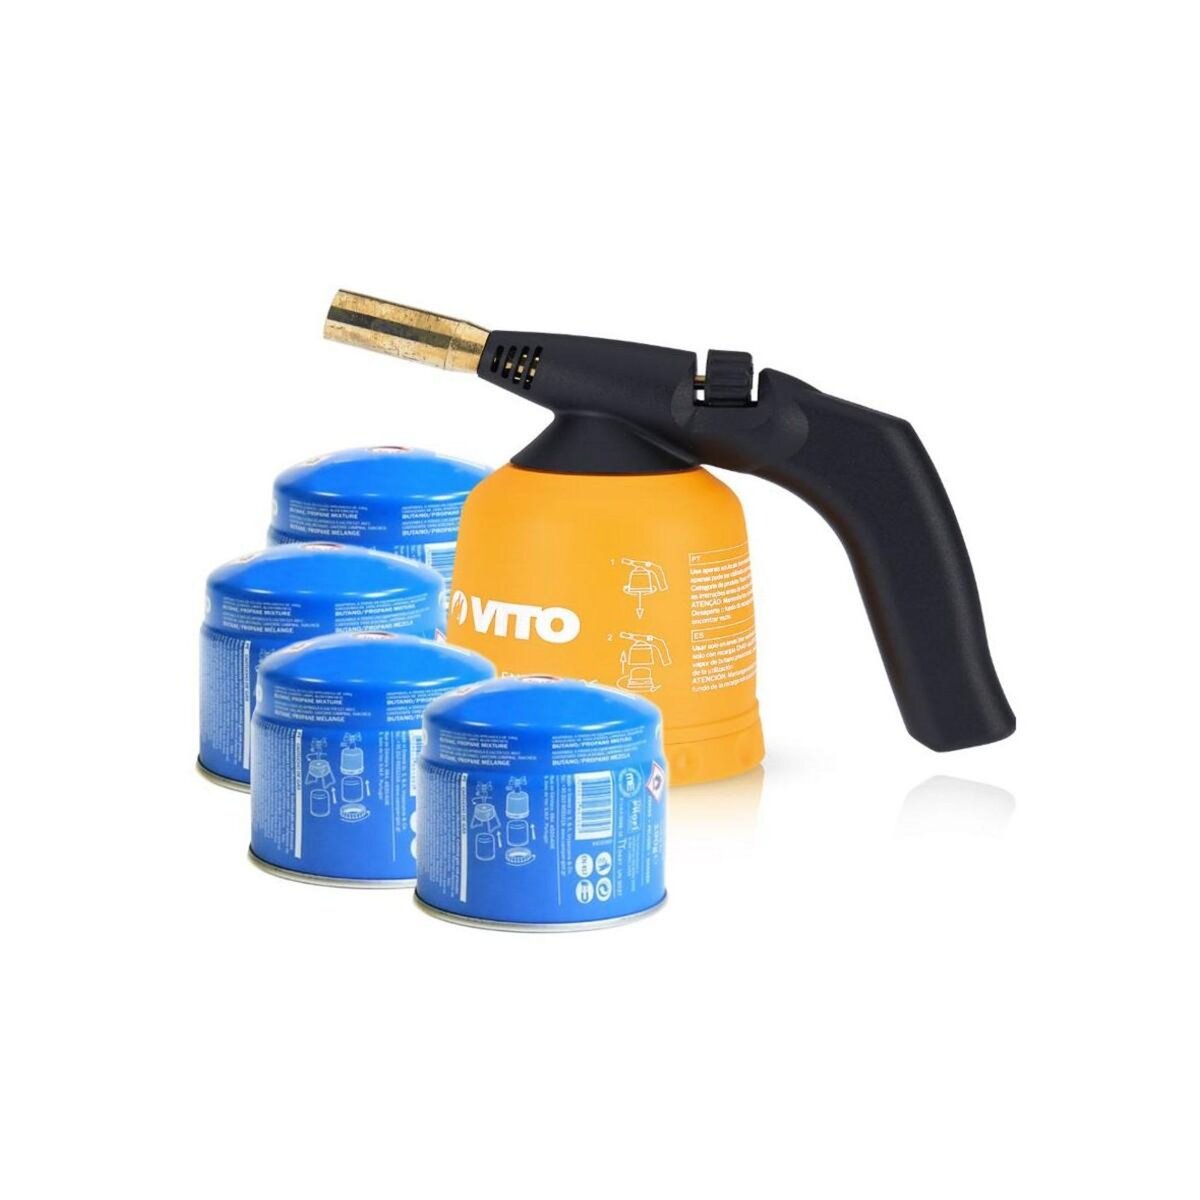 VITO Pro-Power Lampe à souder gaz VITO Allumage piezo coque ABS +  4 Cartouches gaz 190gr Sécurité stop gaz